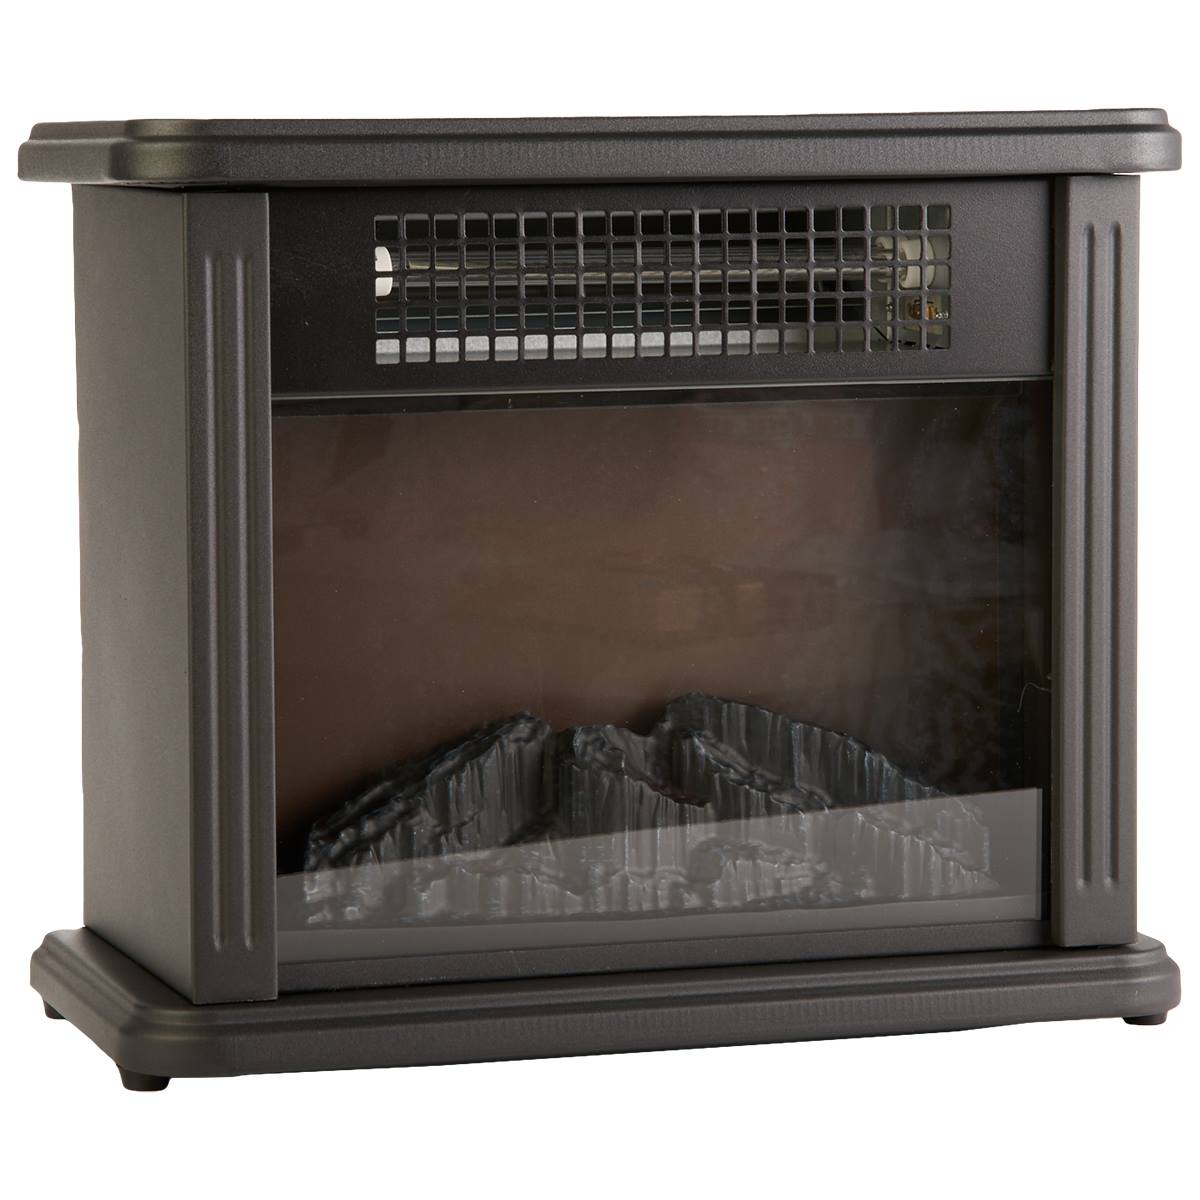 Comfort Zone(tm) 700 Watt Desktop Fireplace Heater